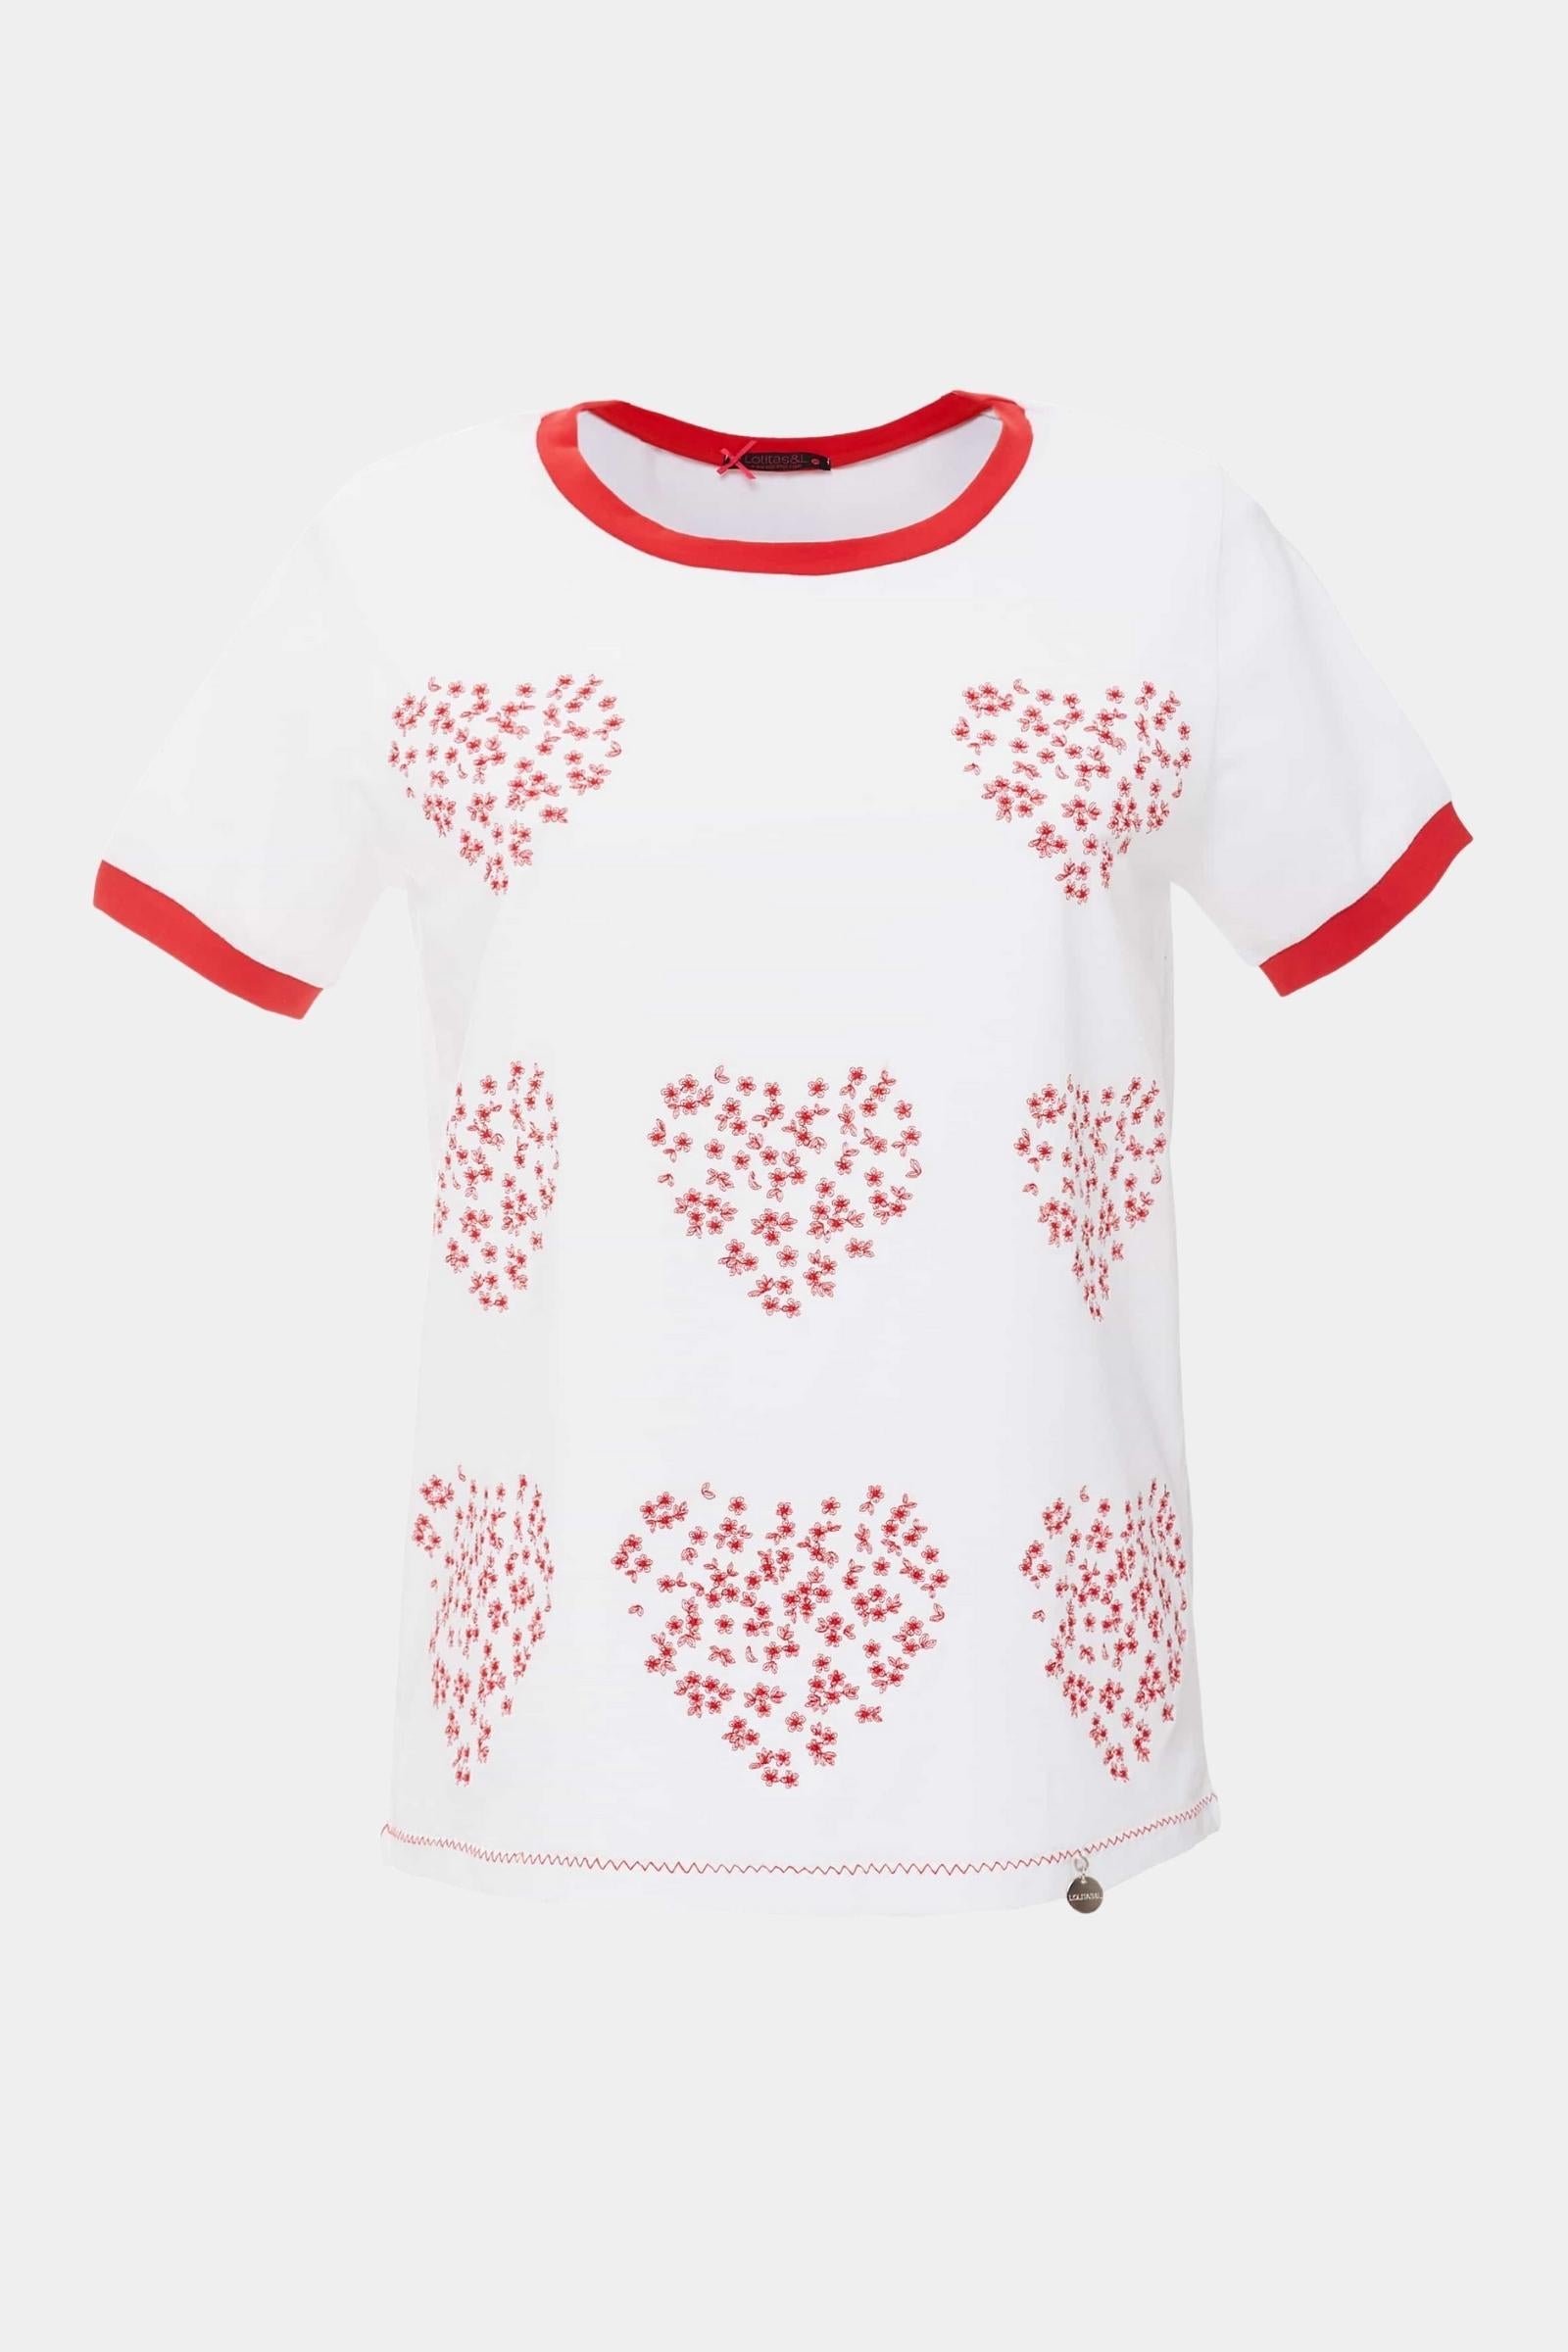 Camiseta blanca con corazones bordados rojos - lolitasyl.com